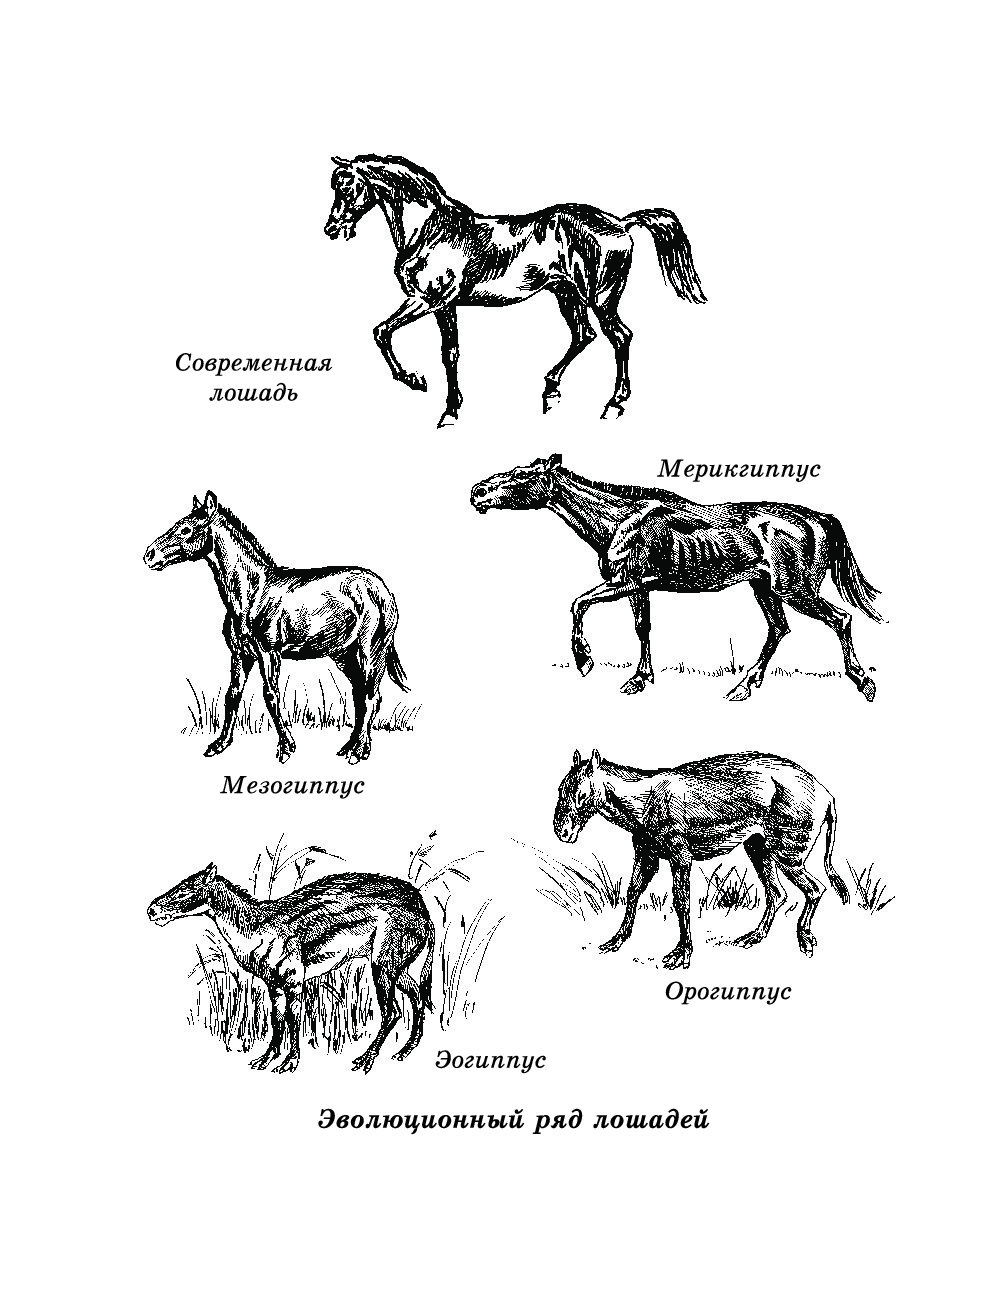 Почему именно конь. Прародитель лошади. Предки современной лошади. Приручение лошади. Эволюция предков лошади.